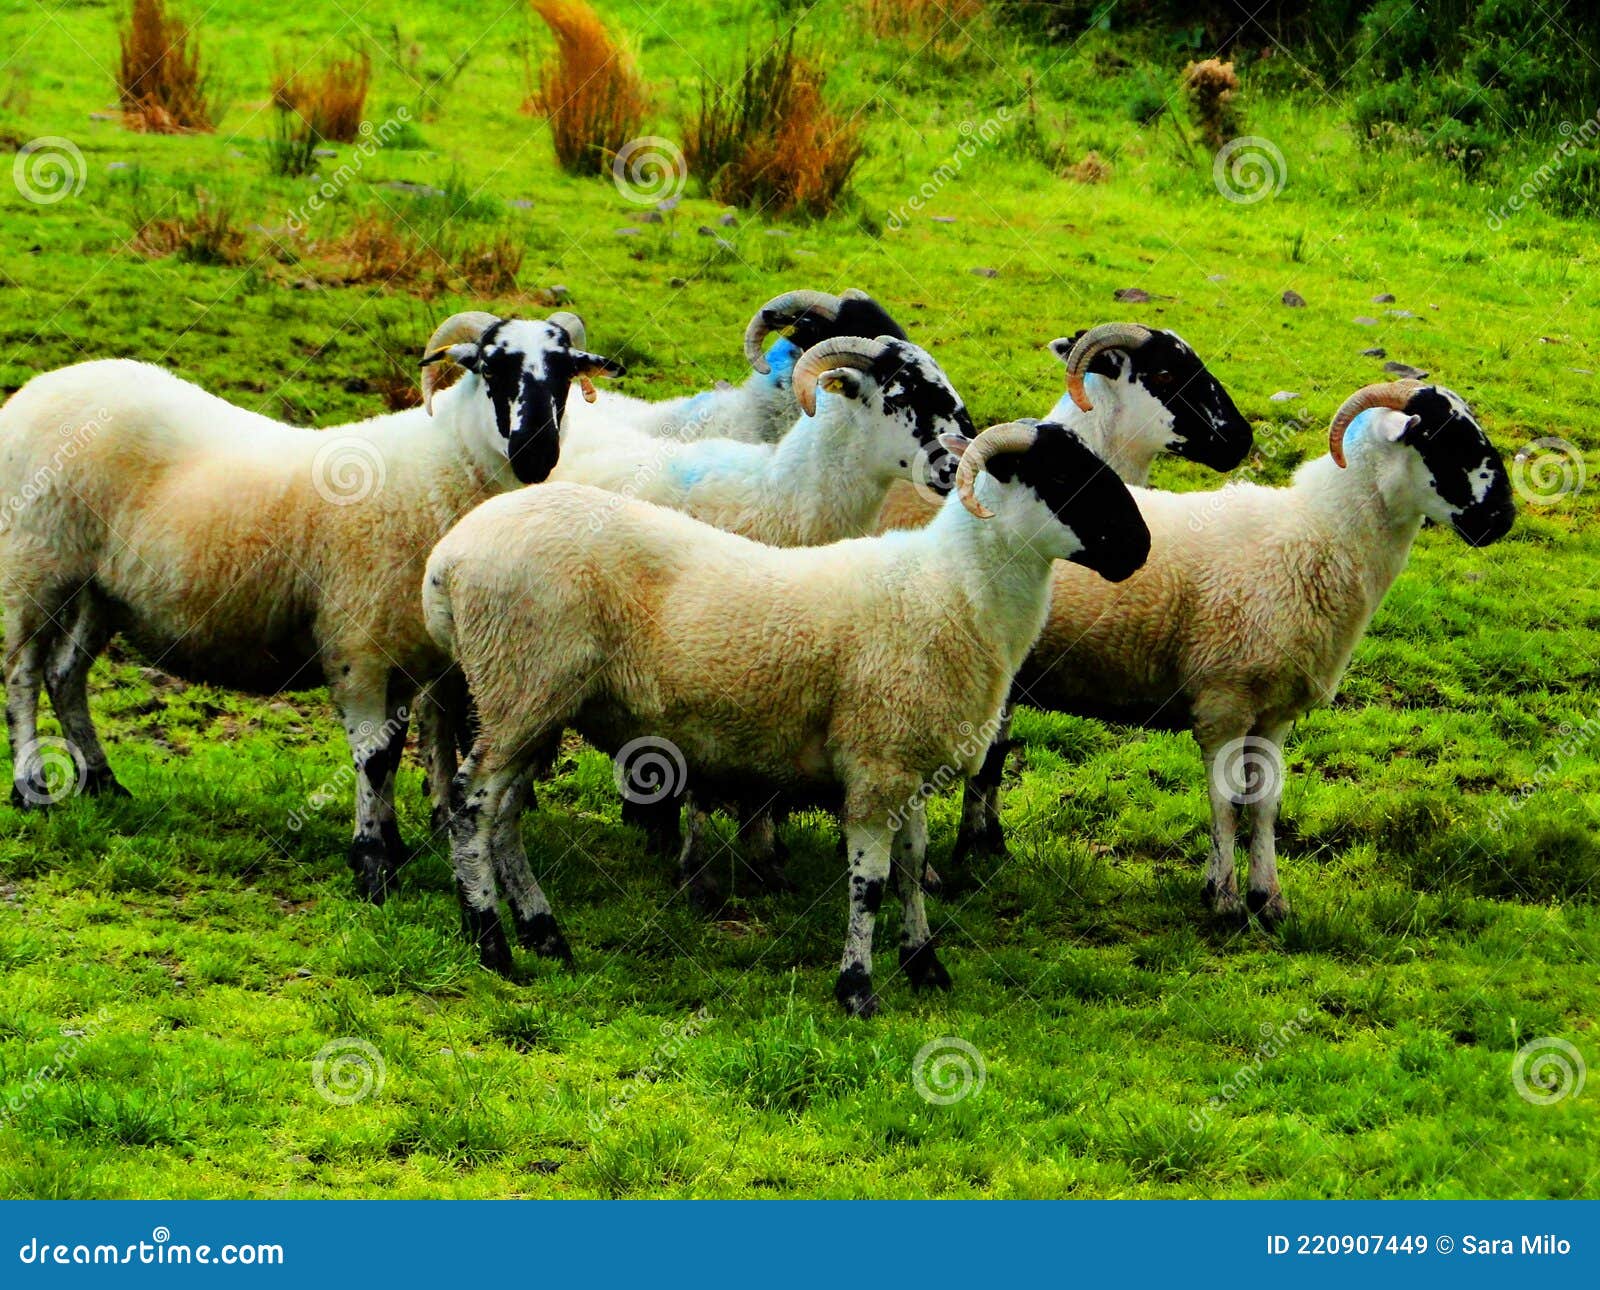 ireland, irish sheep and border collie -irlanda pecore irlandesi